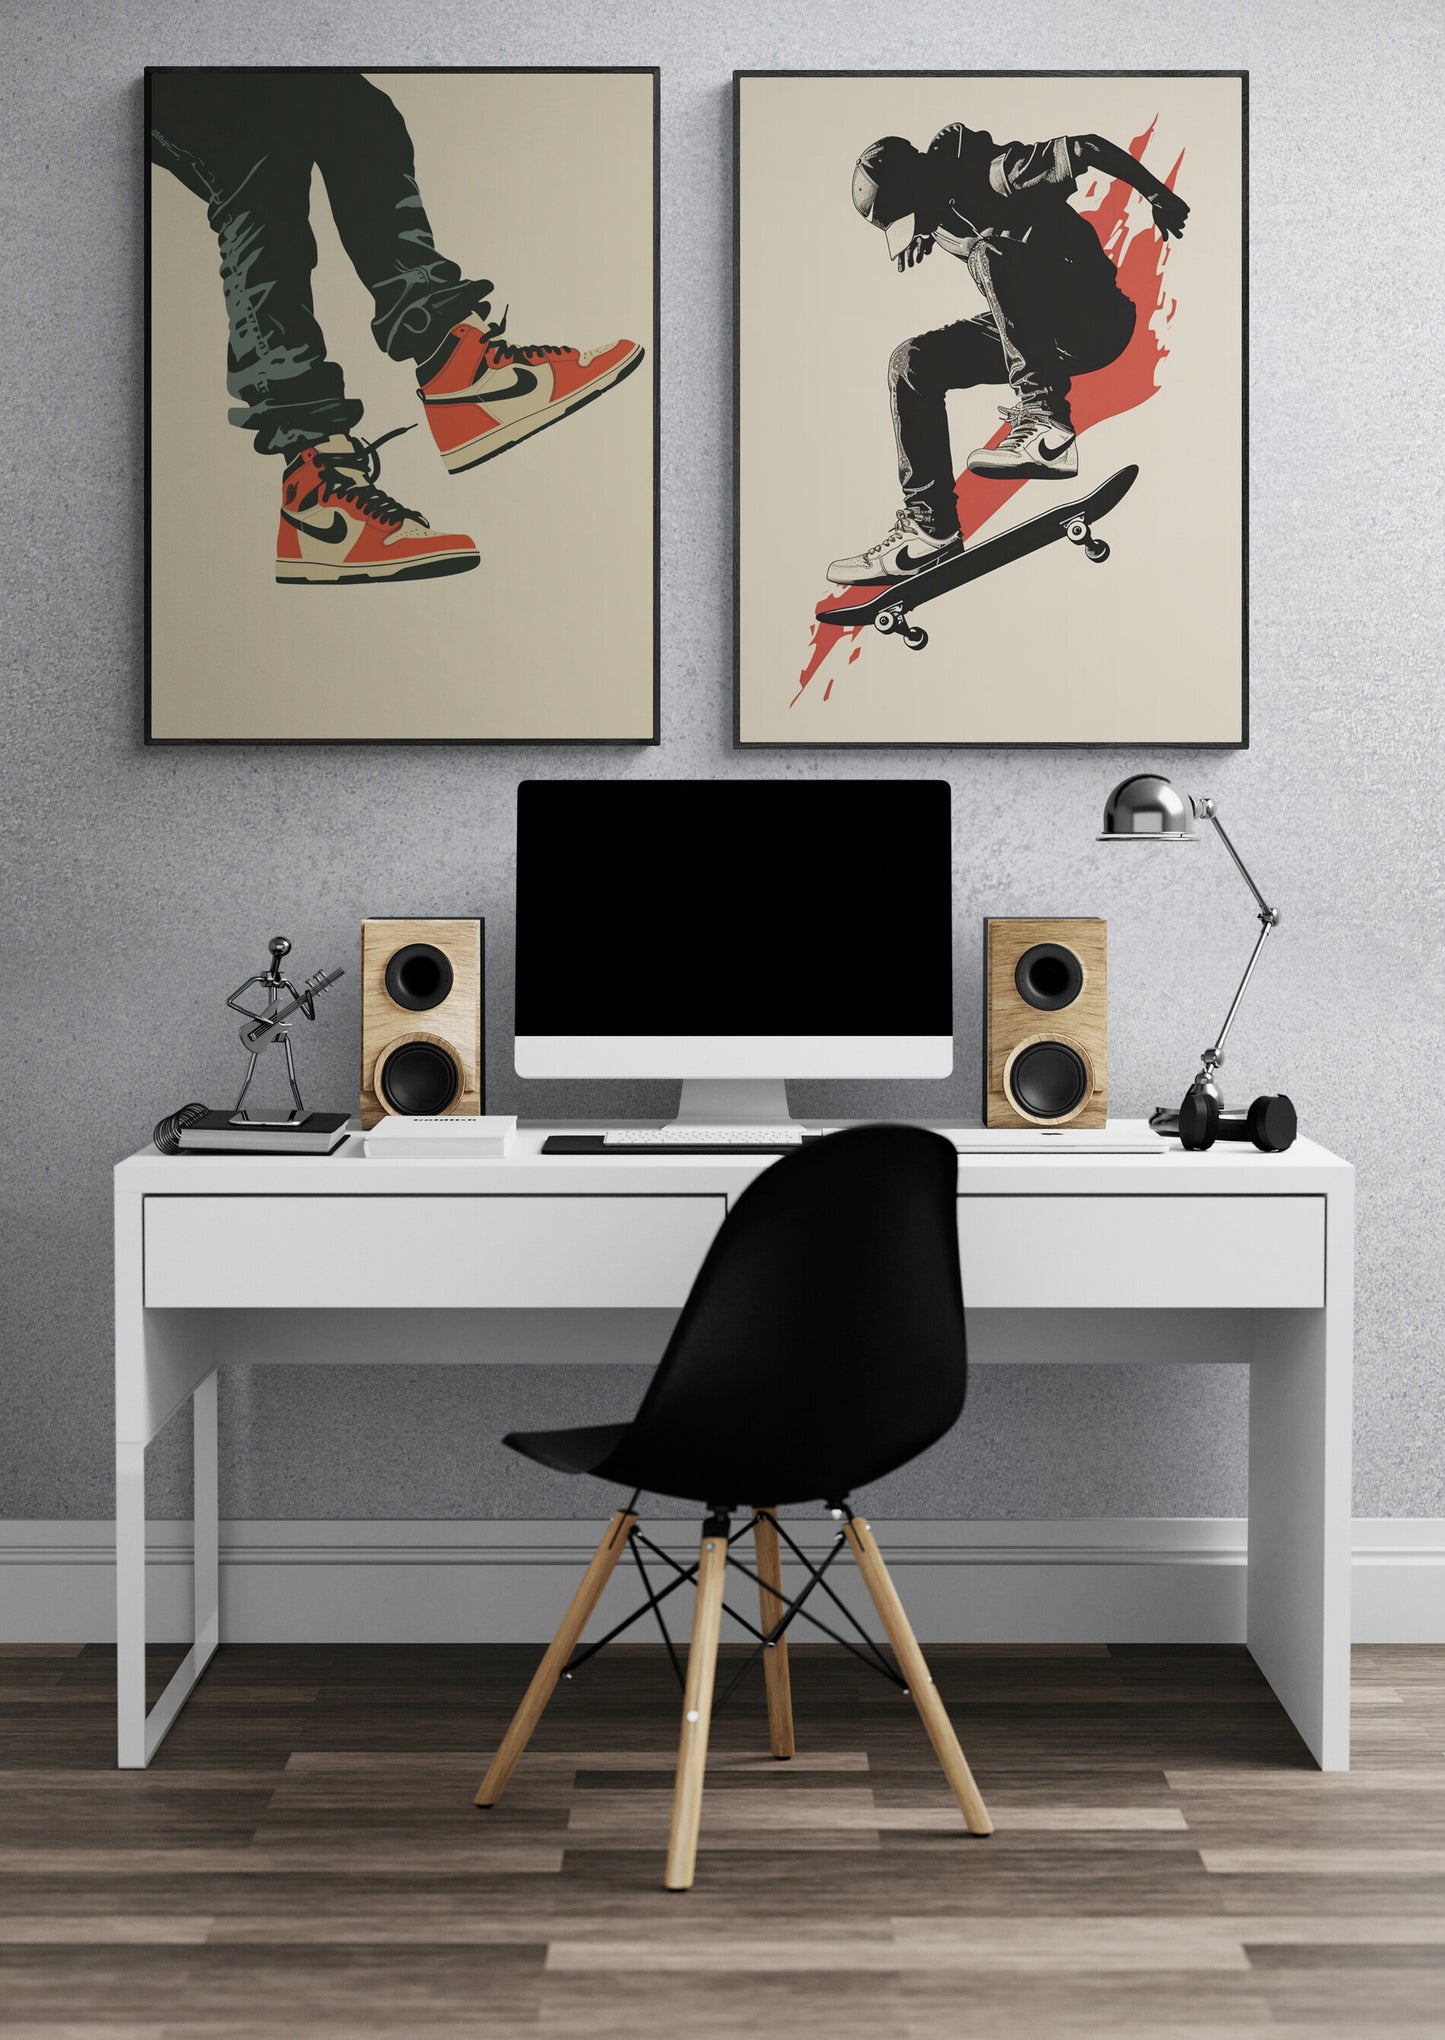 Bureau moderne avec tableau graphique de skateur Nike en noir et rouge.